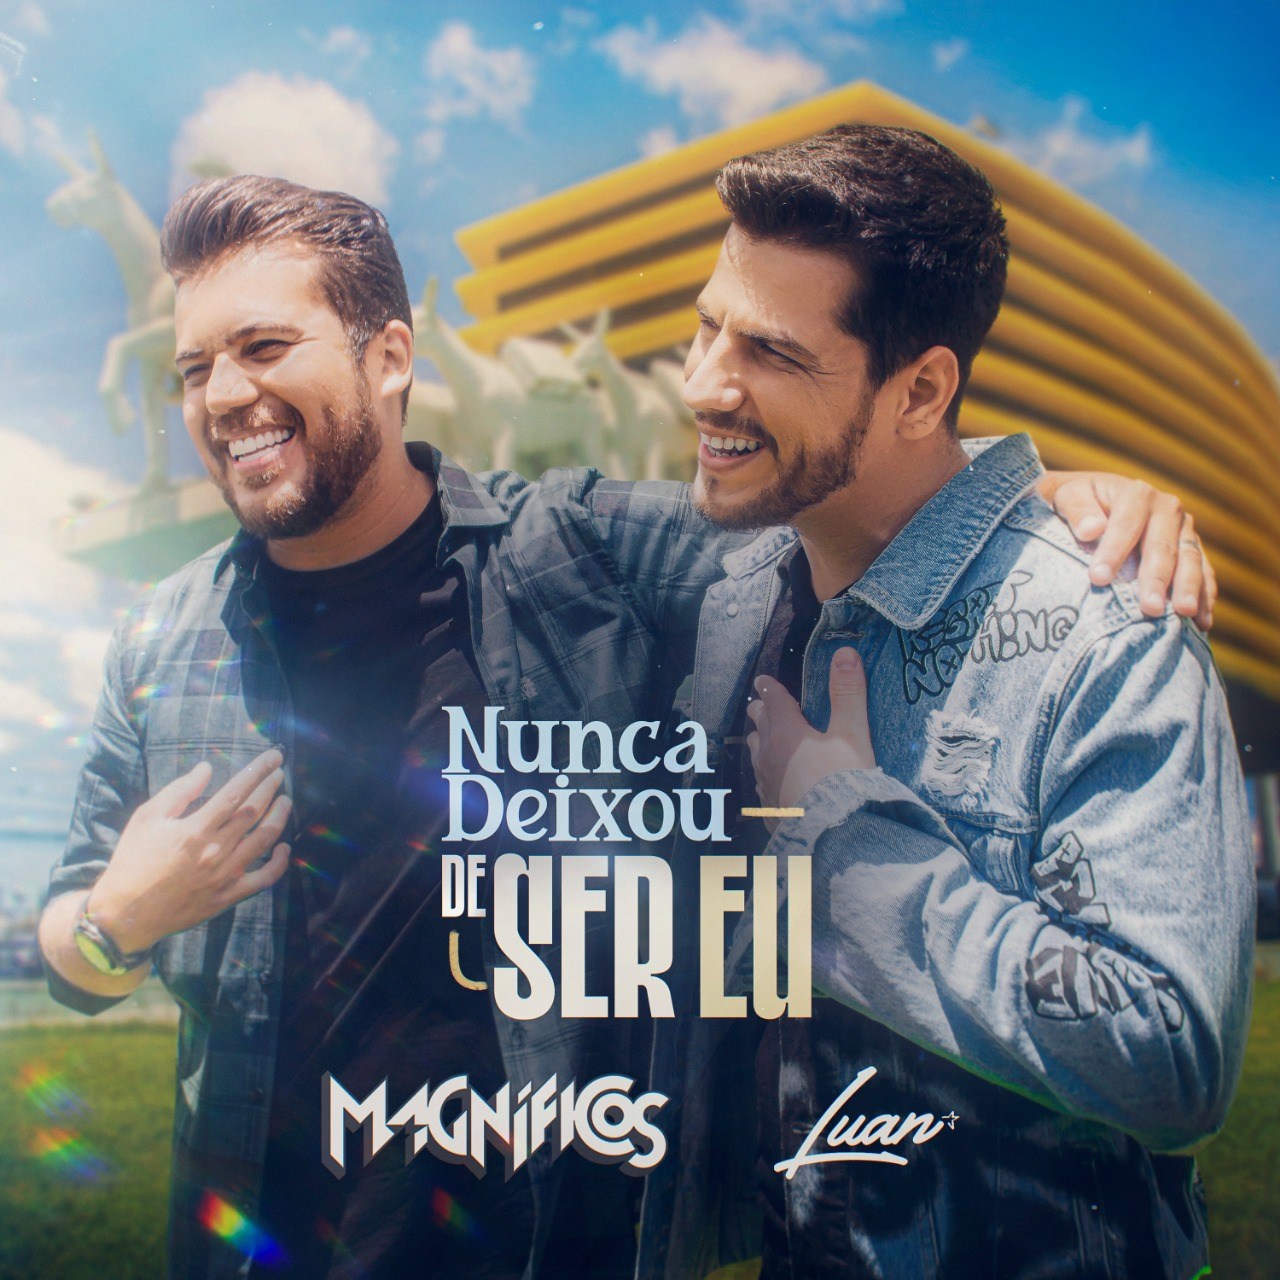 MAGNIFICOS Banda Magníficos lança nesta sexta-feira sua nova música “NUNCA DEIXOU DE SER EU”